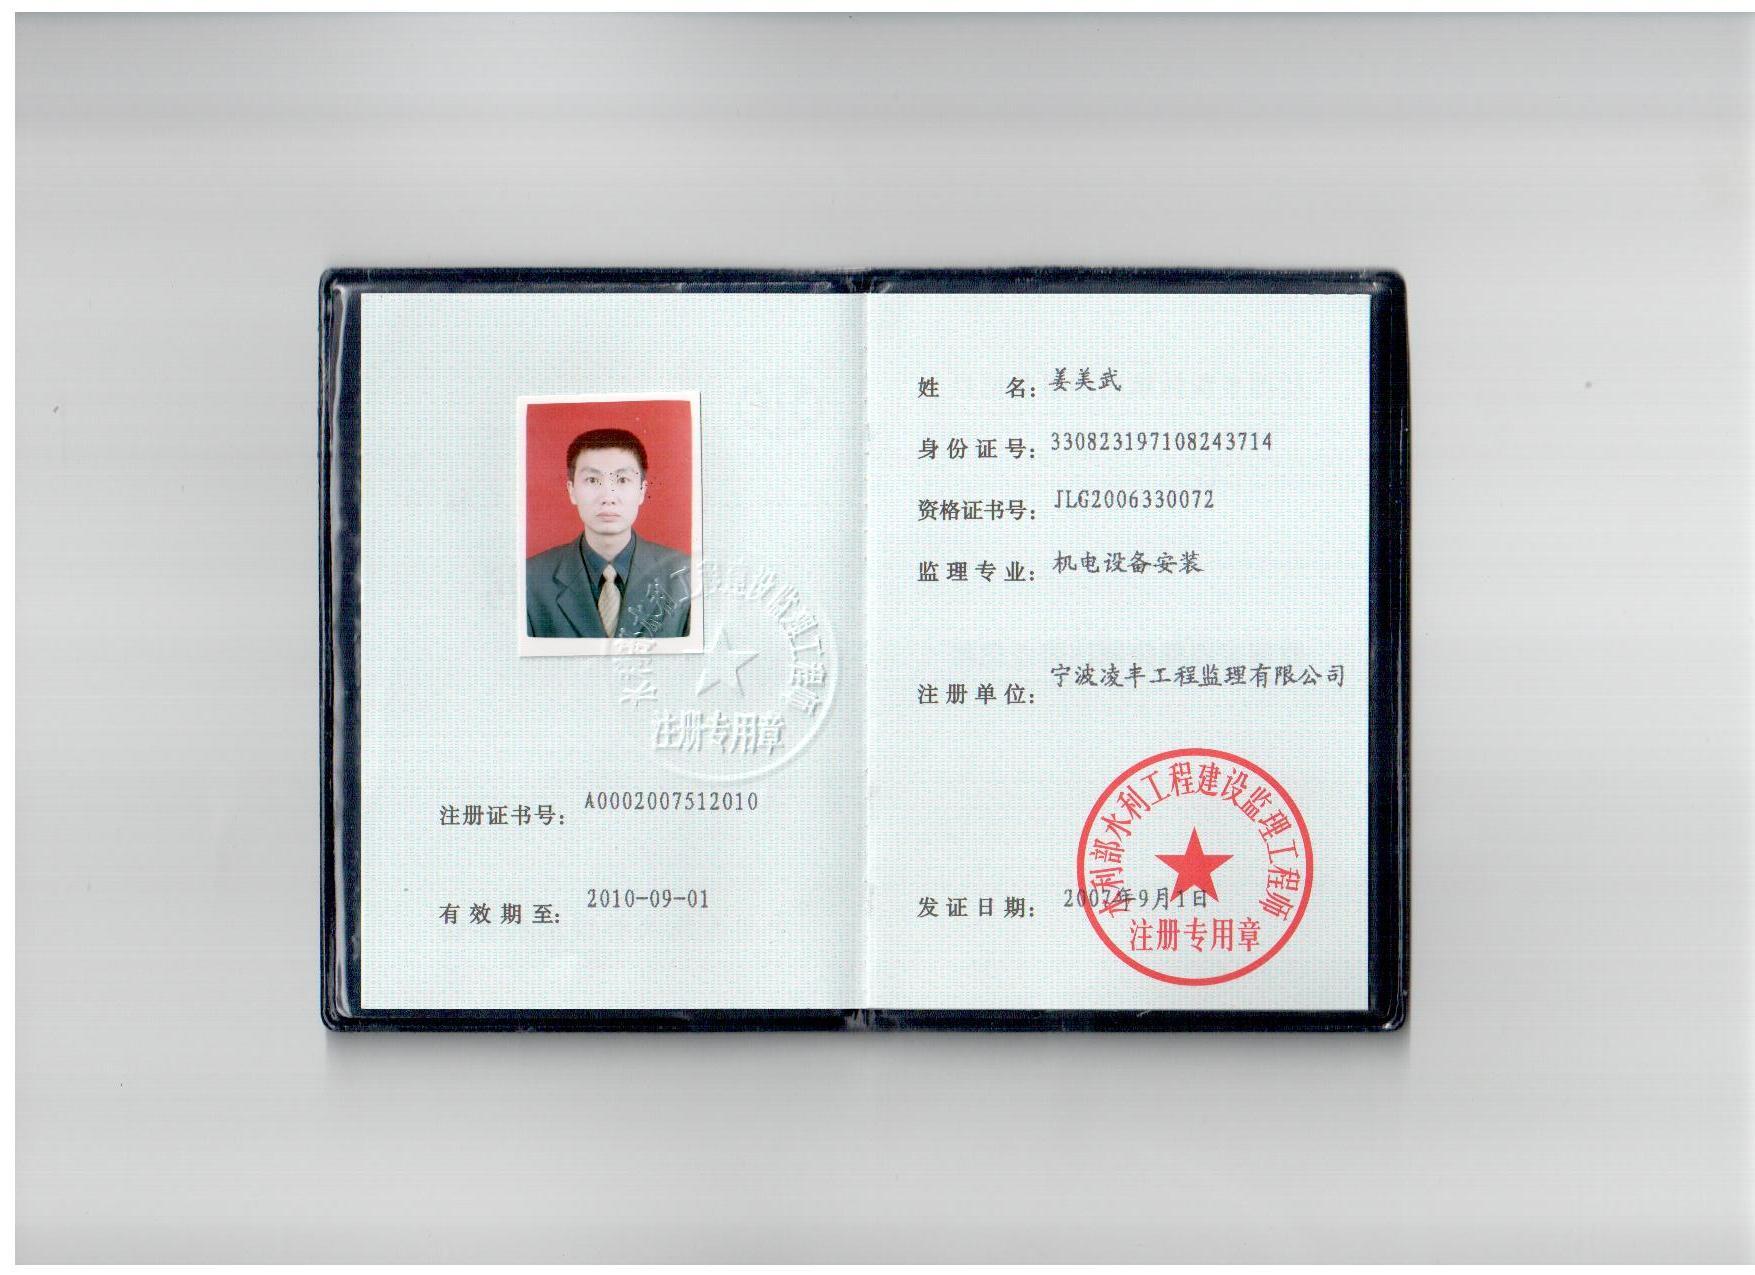 湖南省监理协会的监理工程师属于省证吗湖南监理工程师分省证和国证吗  第1张